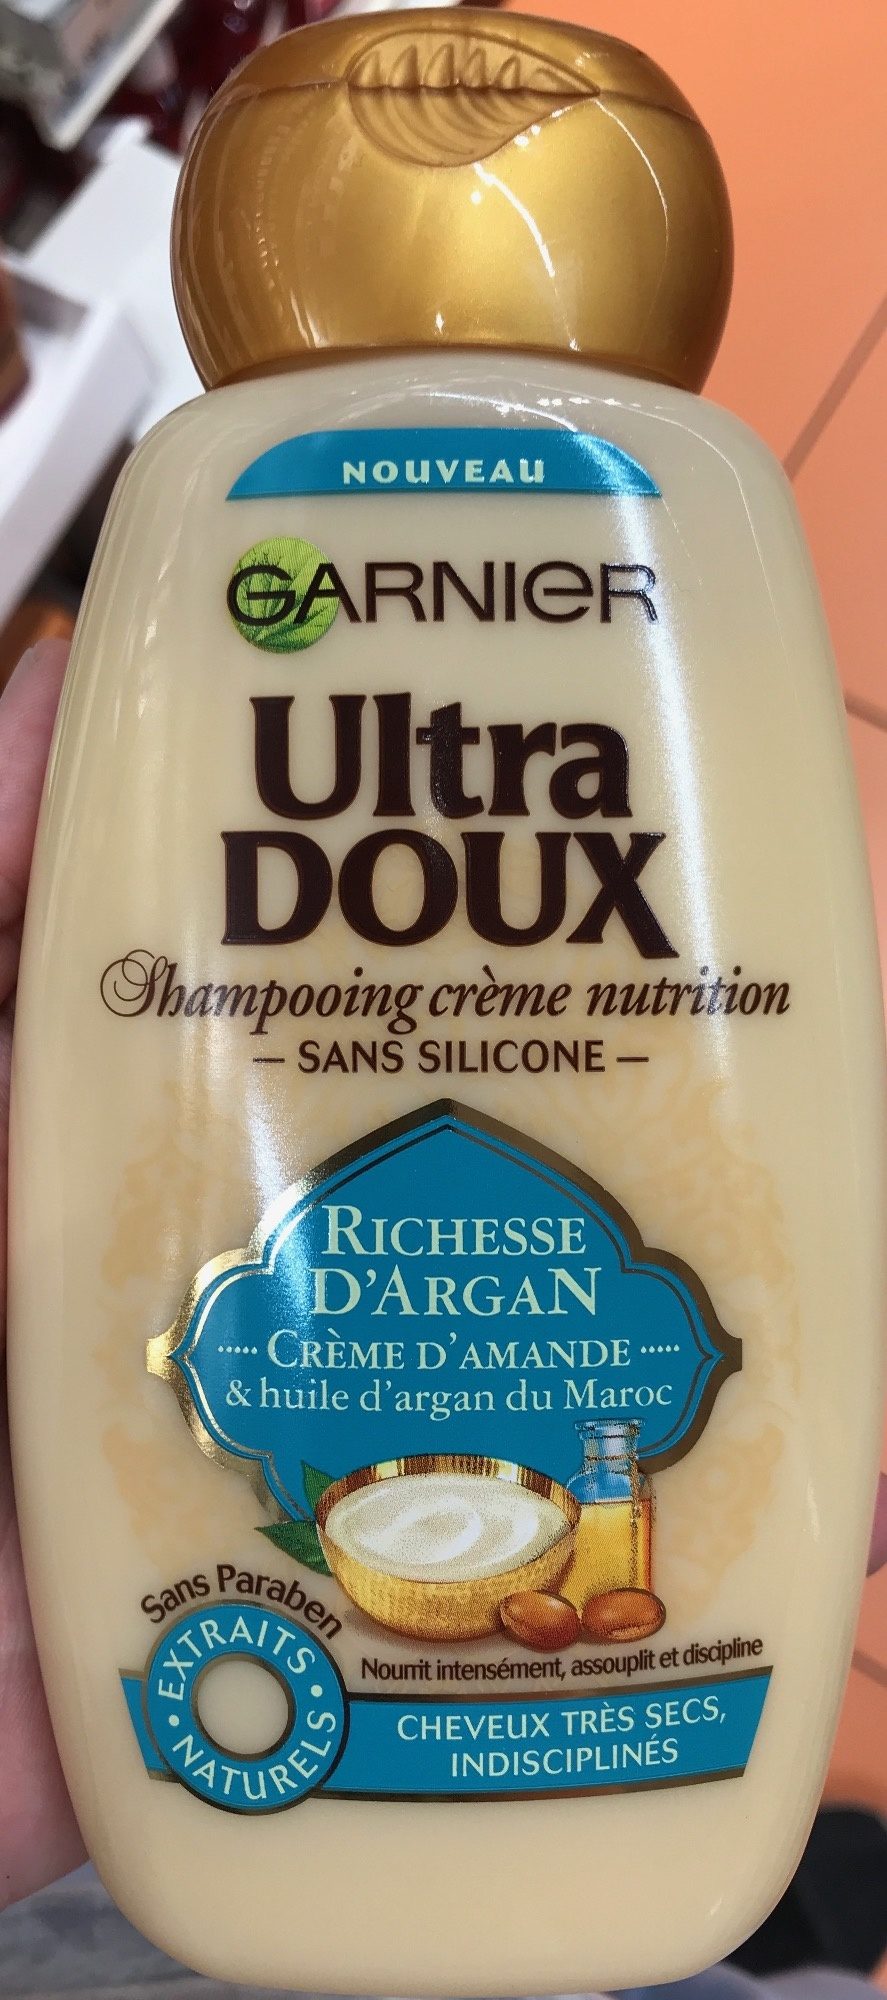 Ultra Doux Shampooing crème nutrition Richesse d'Argan - Produit - fr